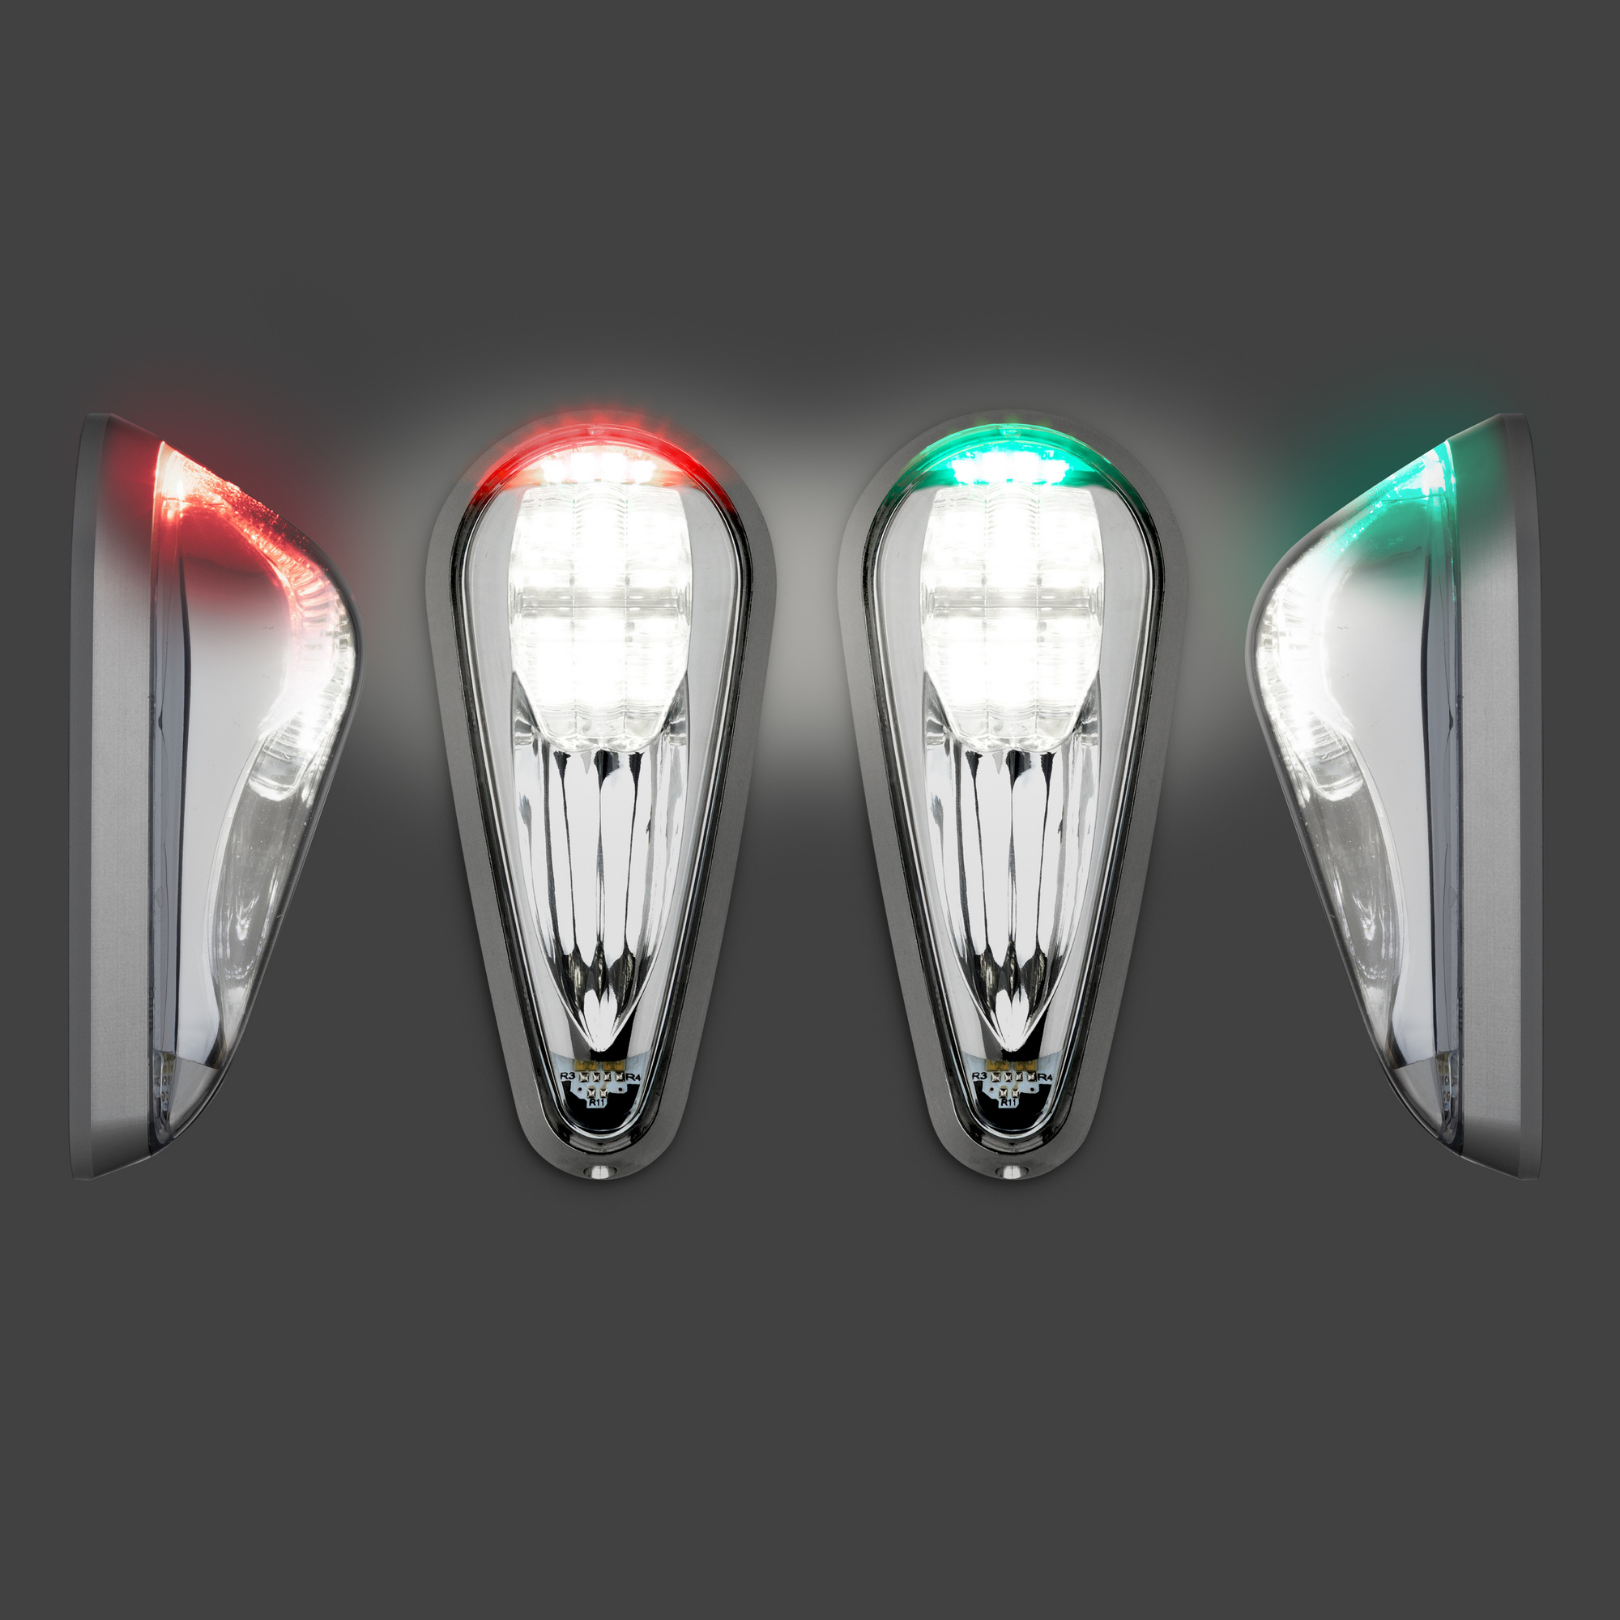 Pulsar Certified LED Navigation Lights N ~ AeroLED's